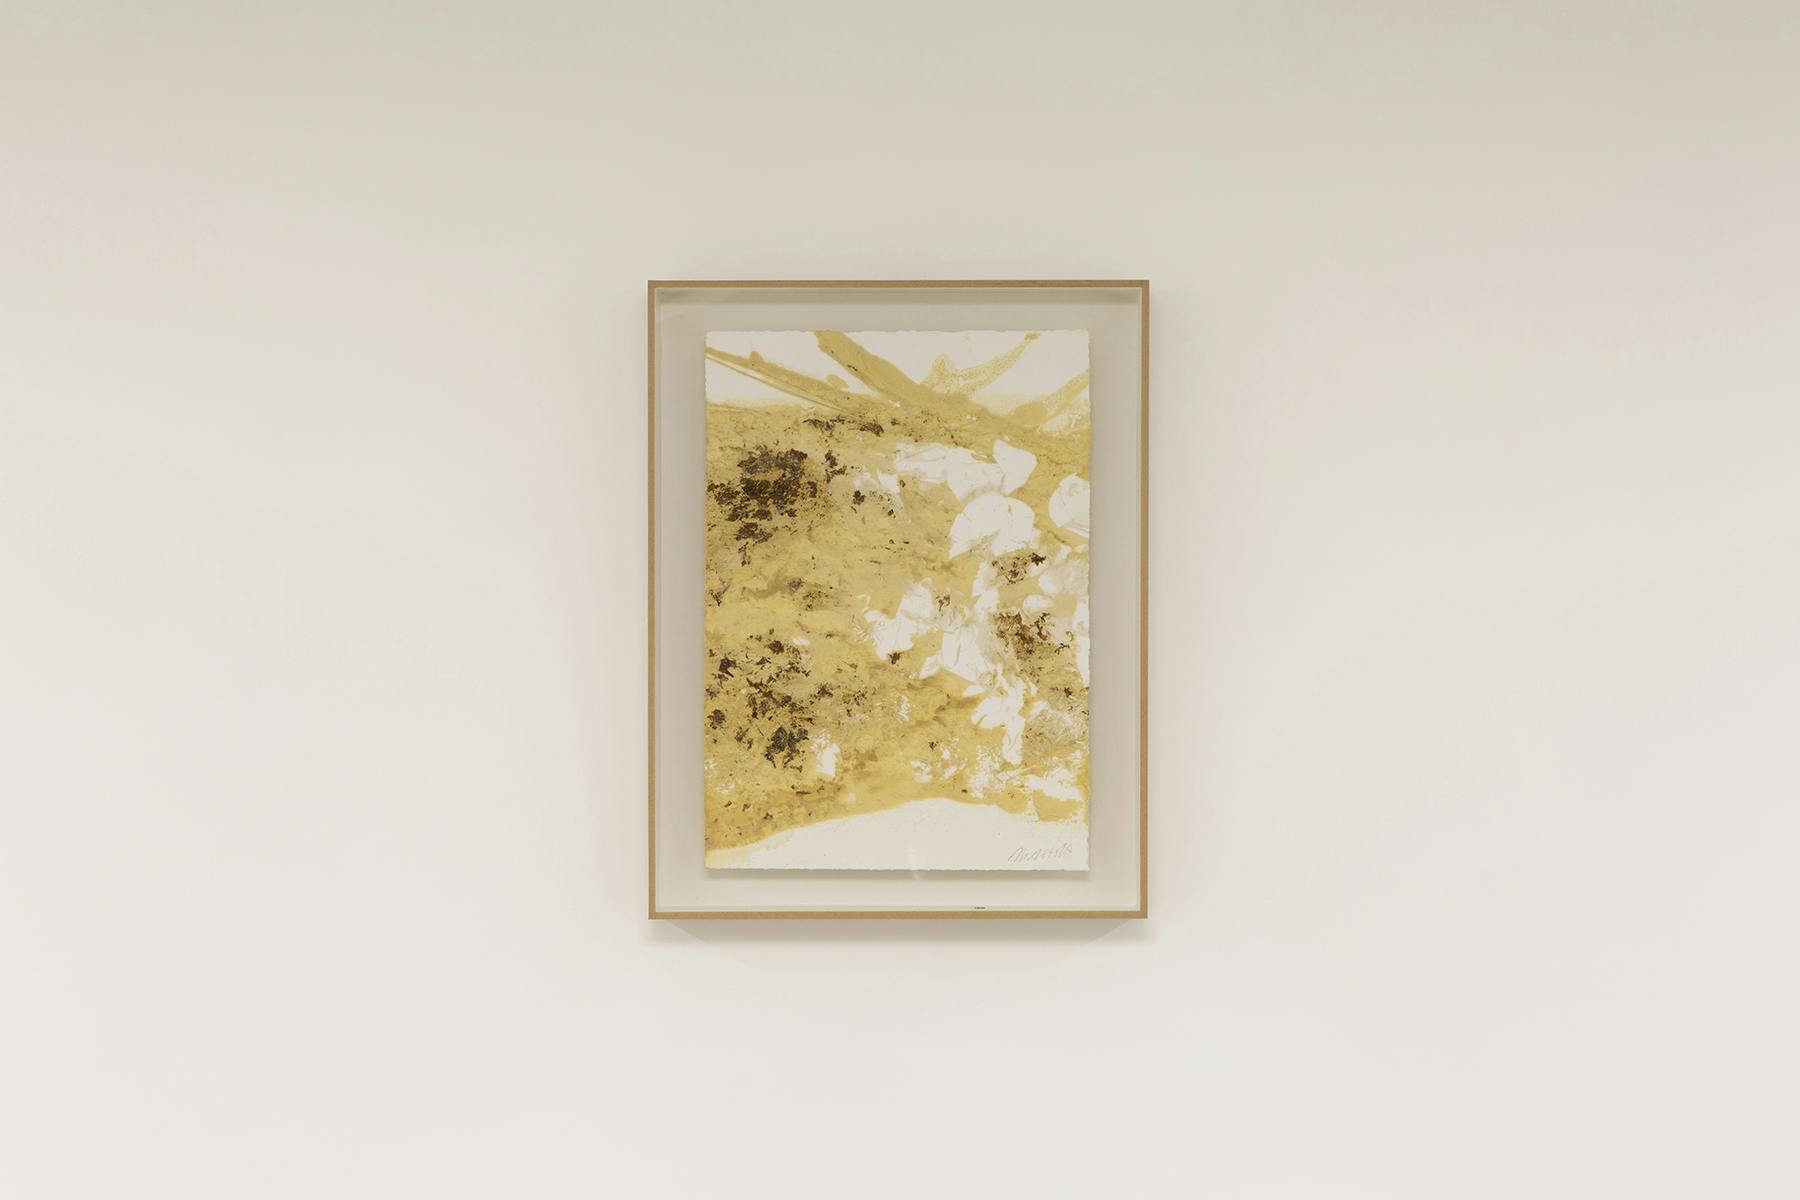 Marble and Flowers (Flesh), 2021, inchiostro di marmo e fiori su carta, 46 x 36 cm